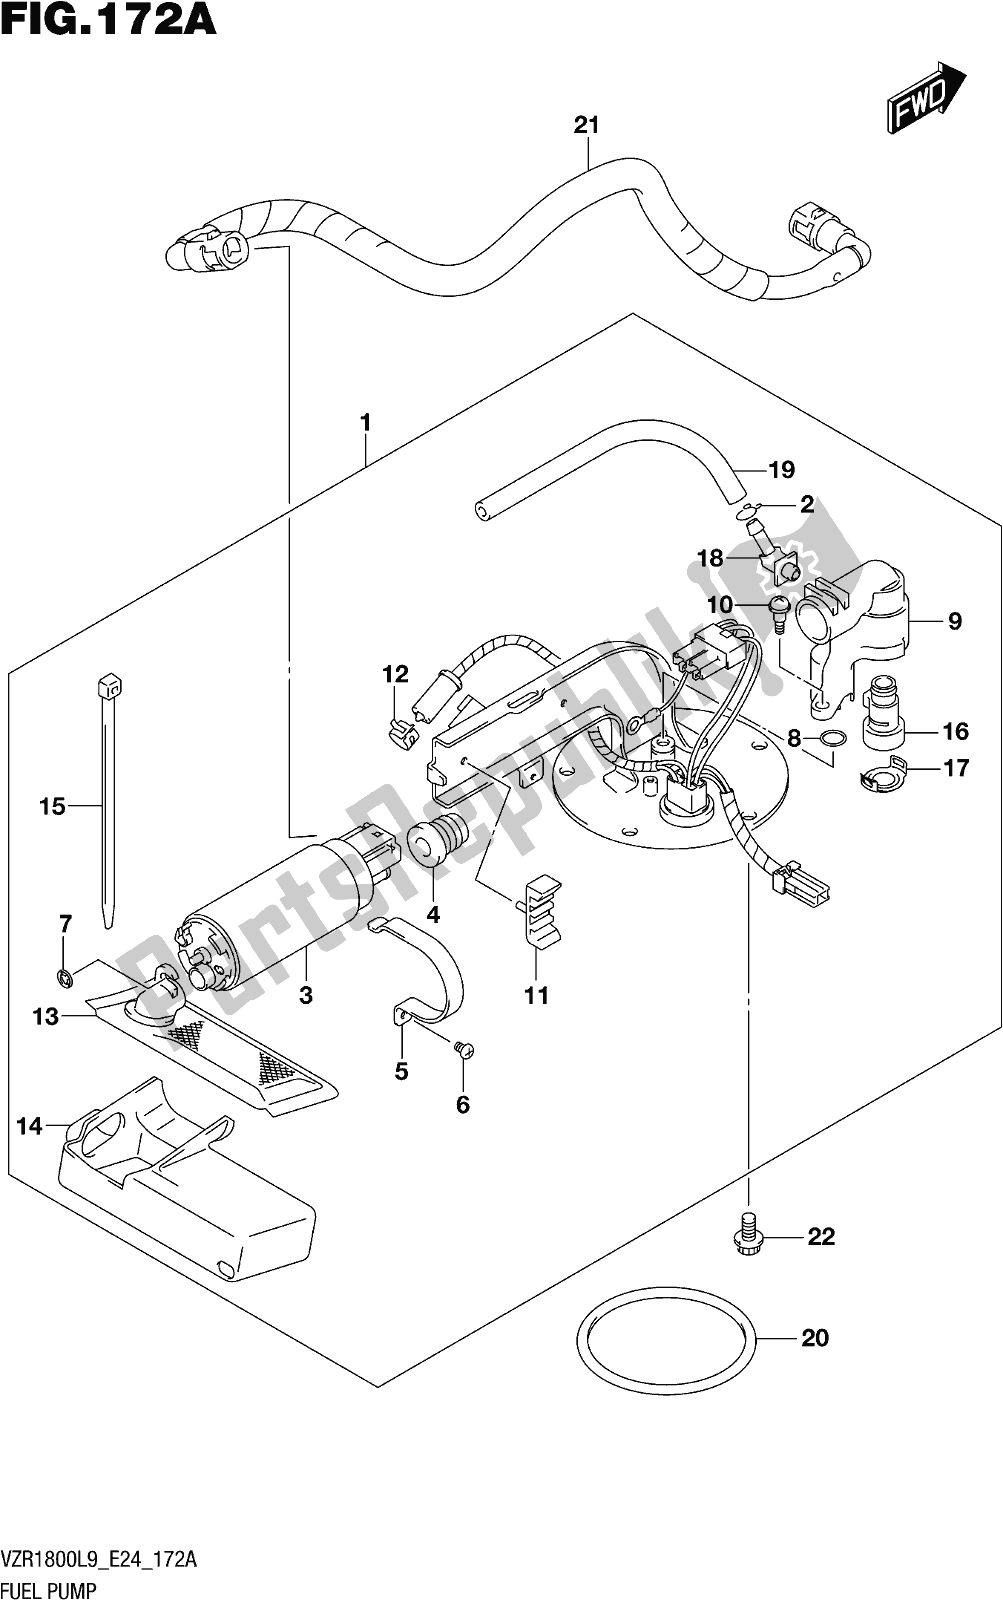 Toutes les pièces pour le Fig. 172a Fuel Pump du Suzuki VZR 1800 BZ 2019